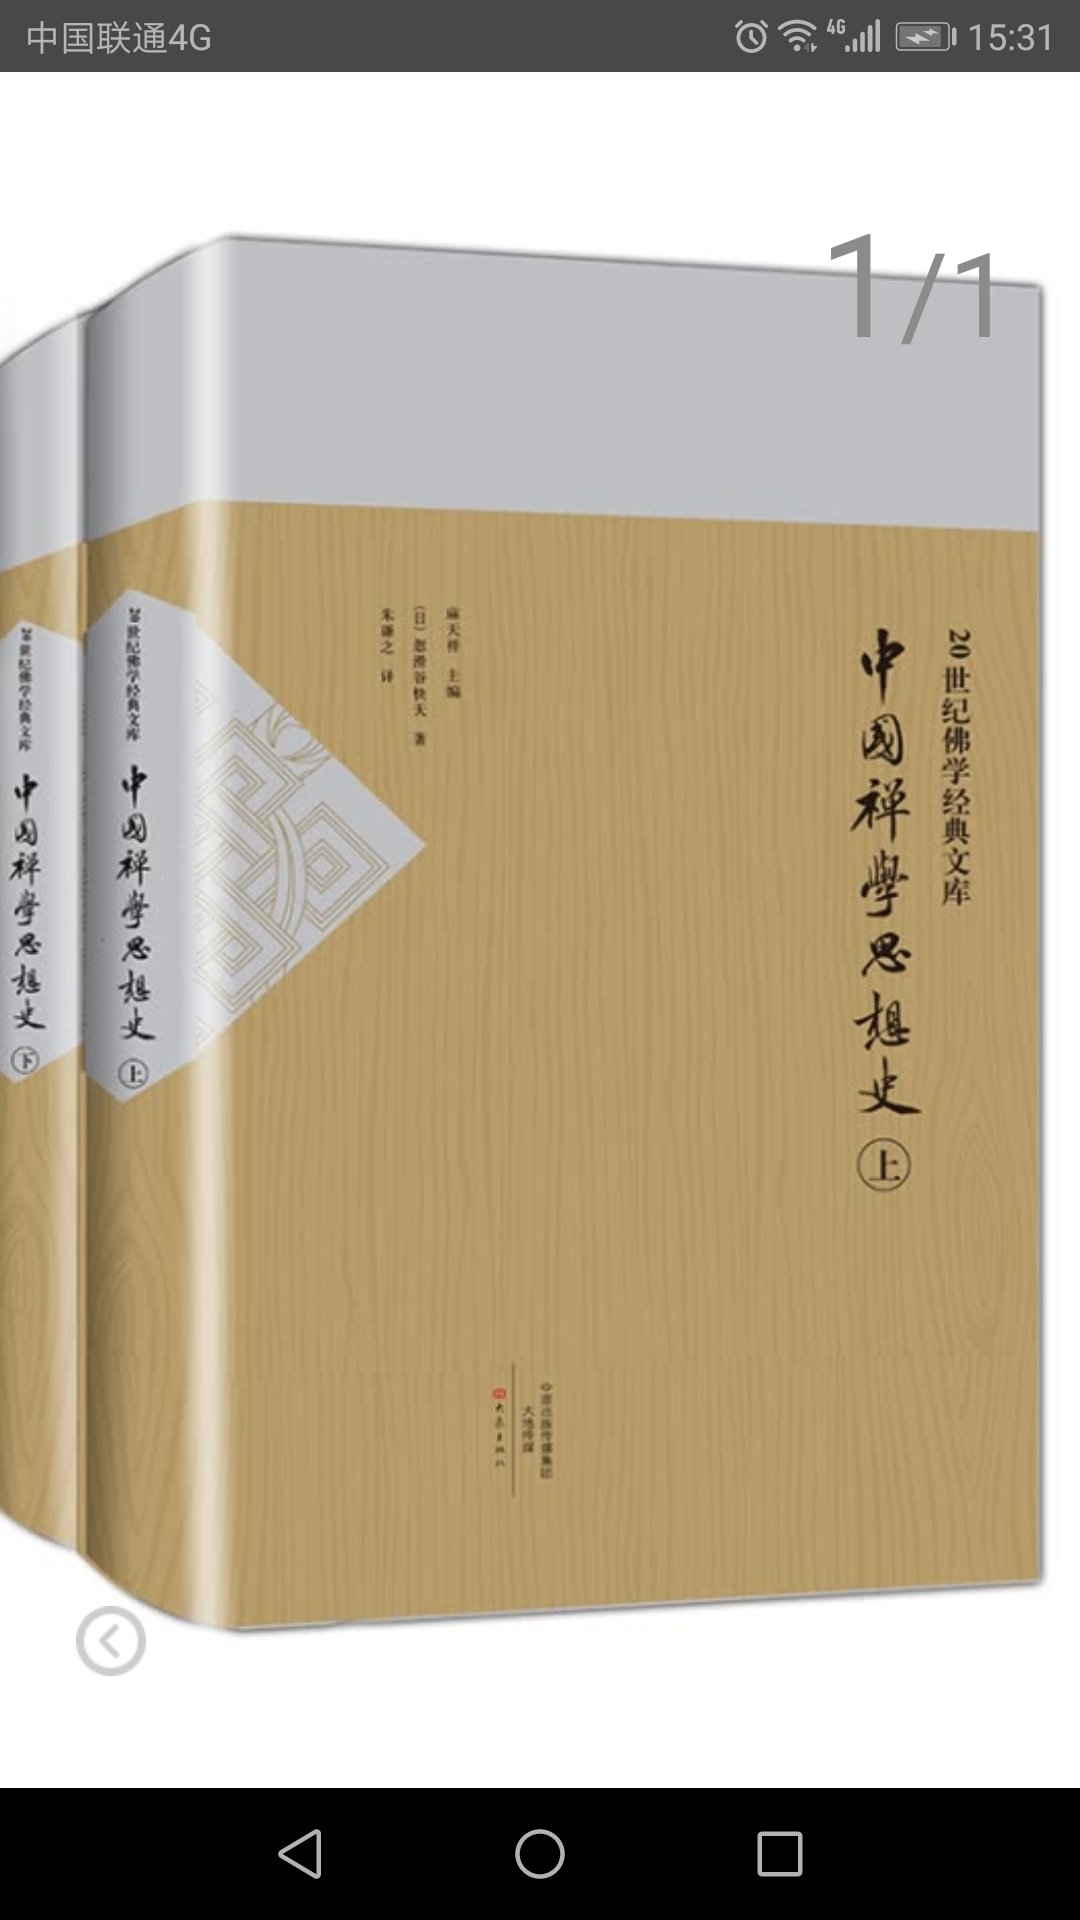 中国禅学思想史，不错，有一定价值！这个订单拖了十多天才发货，就是因为这套书缺了，好在补上了。